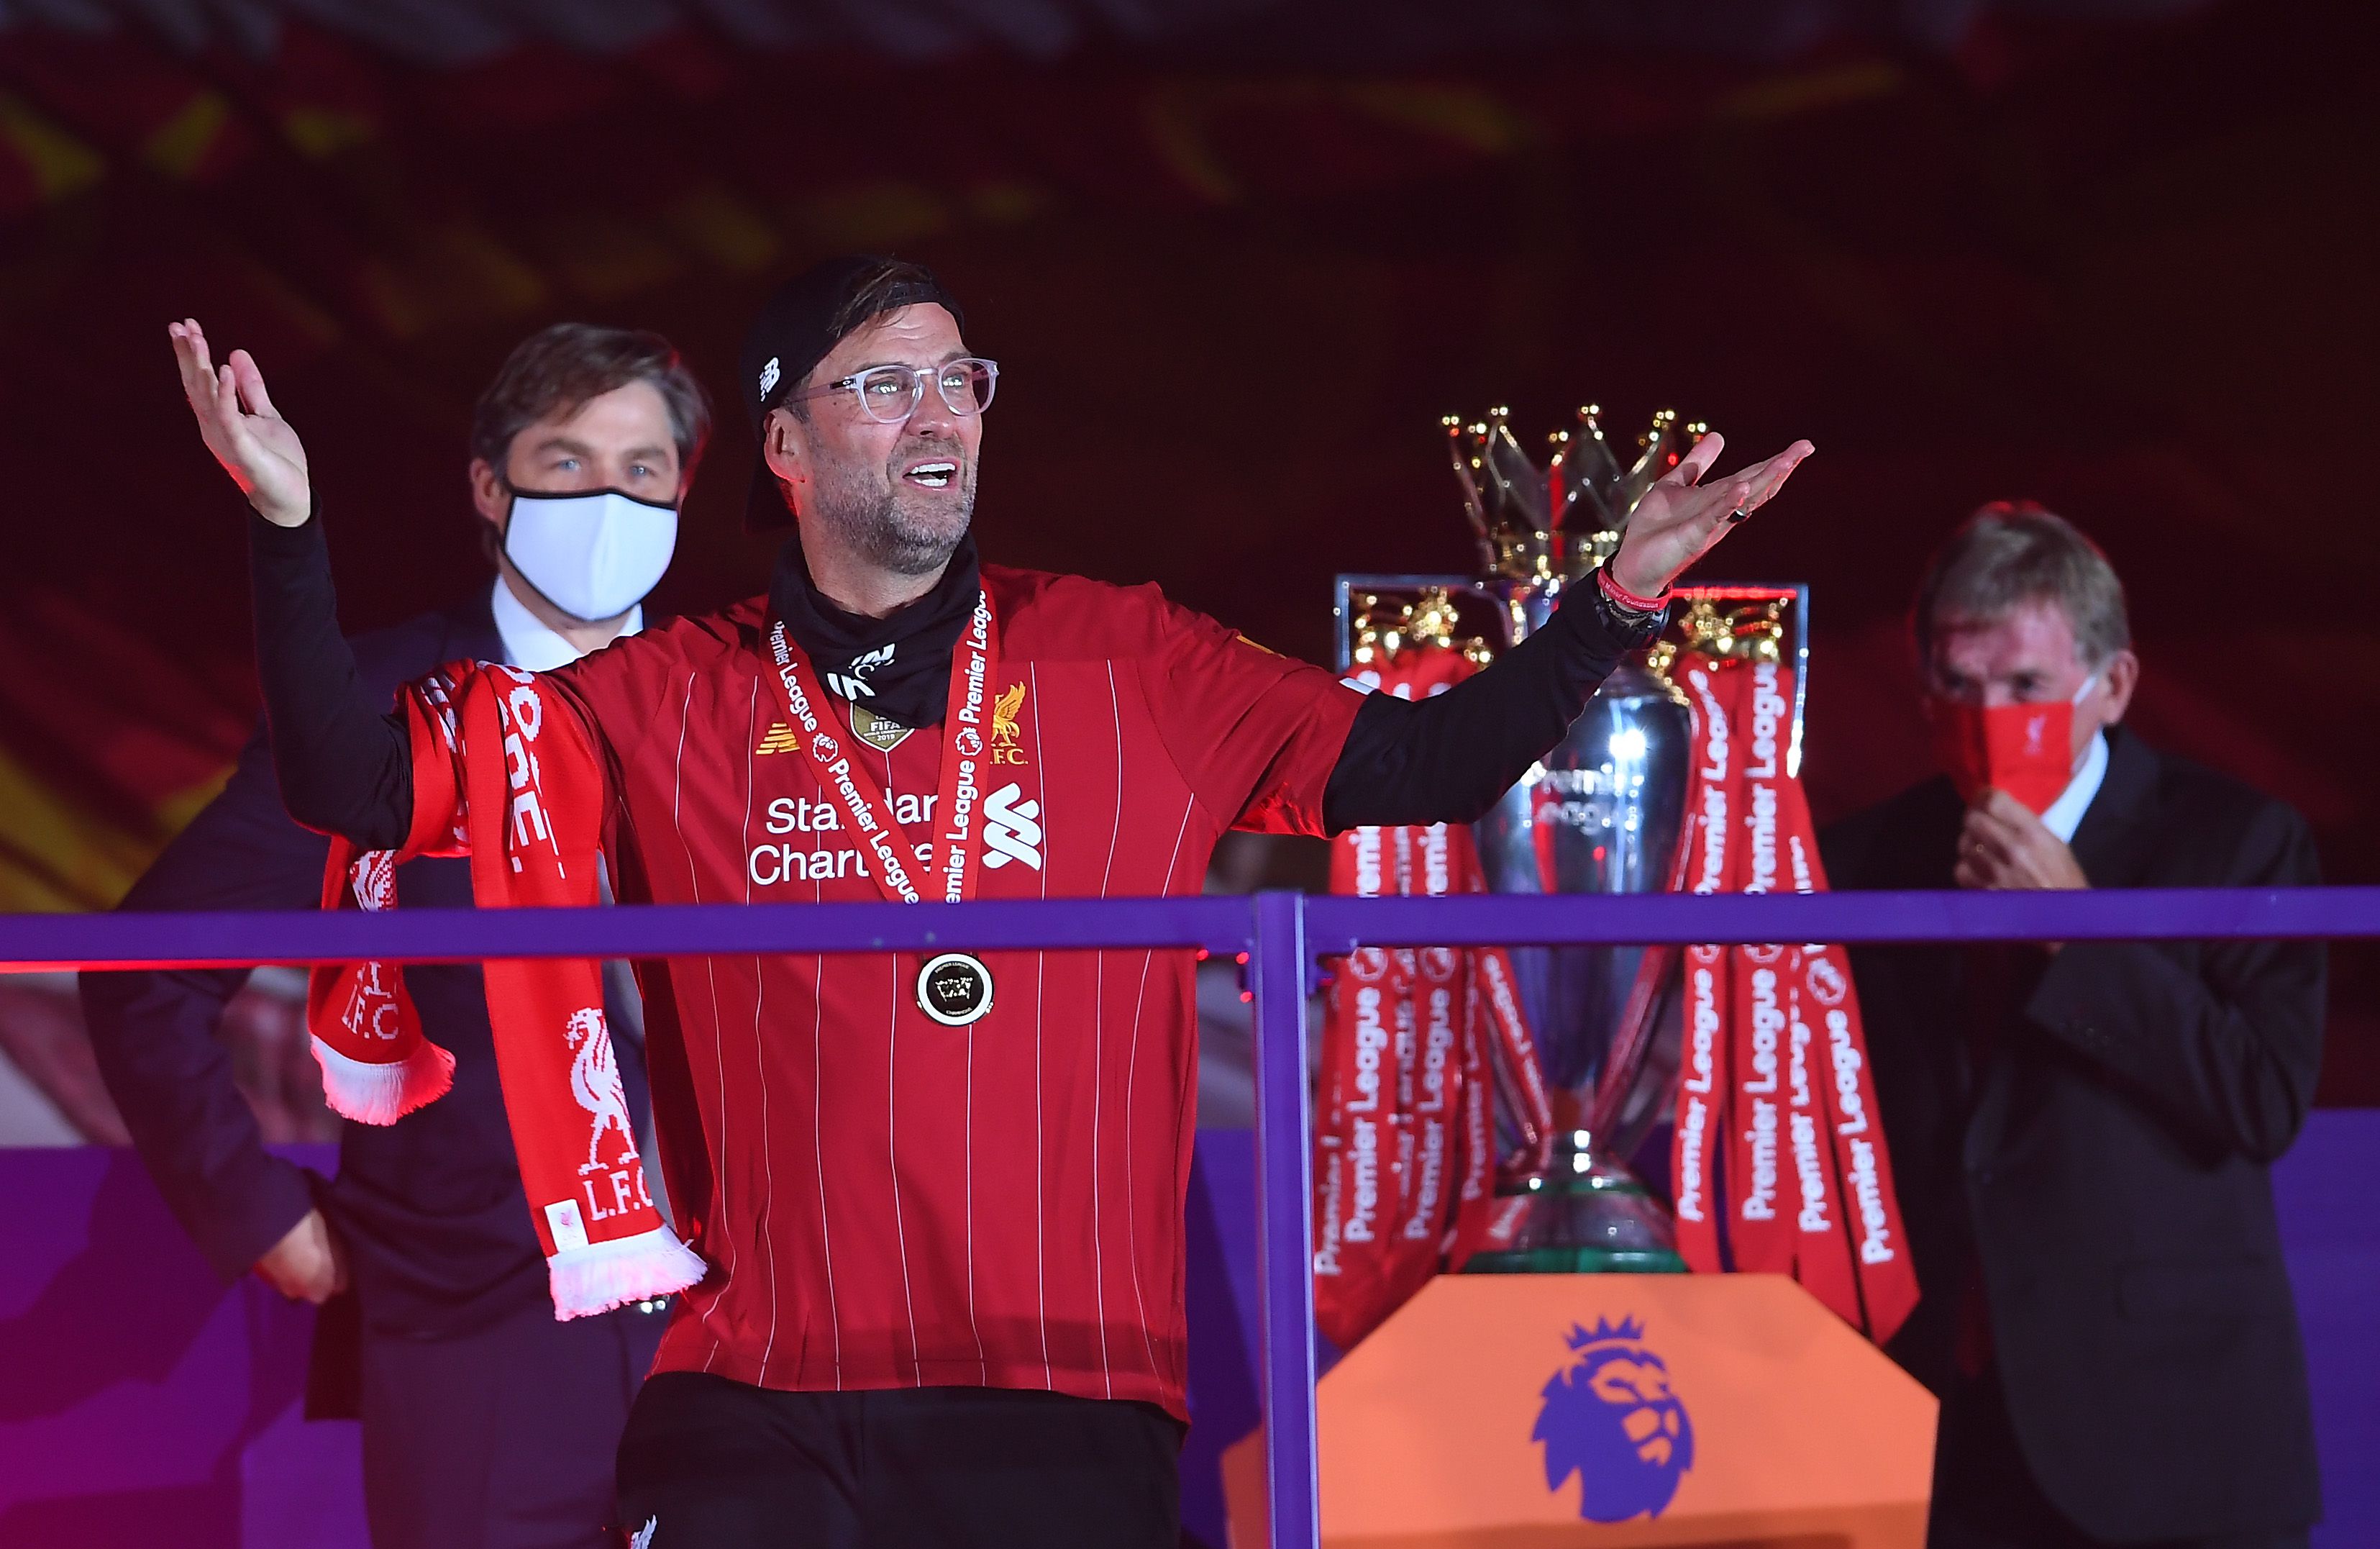 2020: elkészült a mestermű – Jürgen Klopp bajnok lett a Liverpoollal